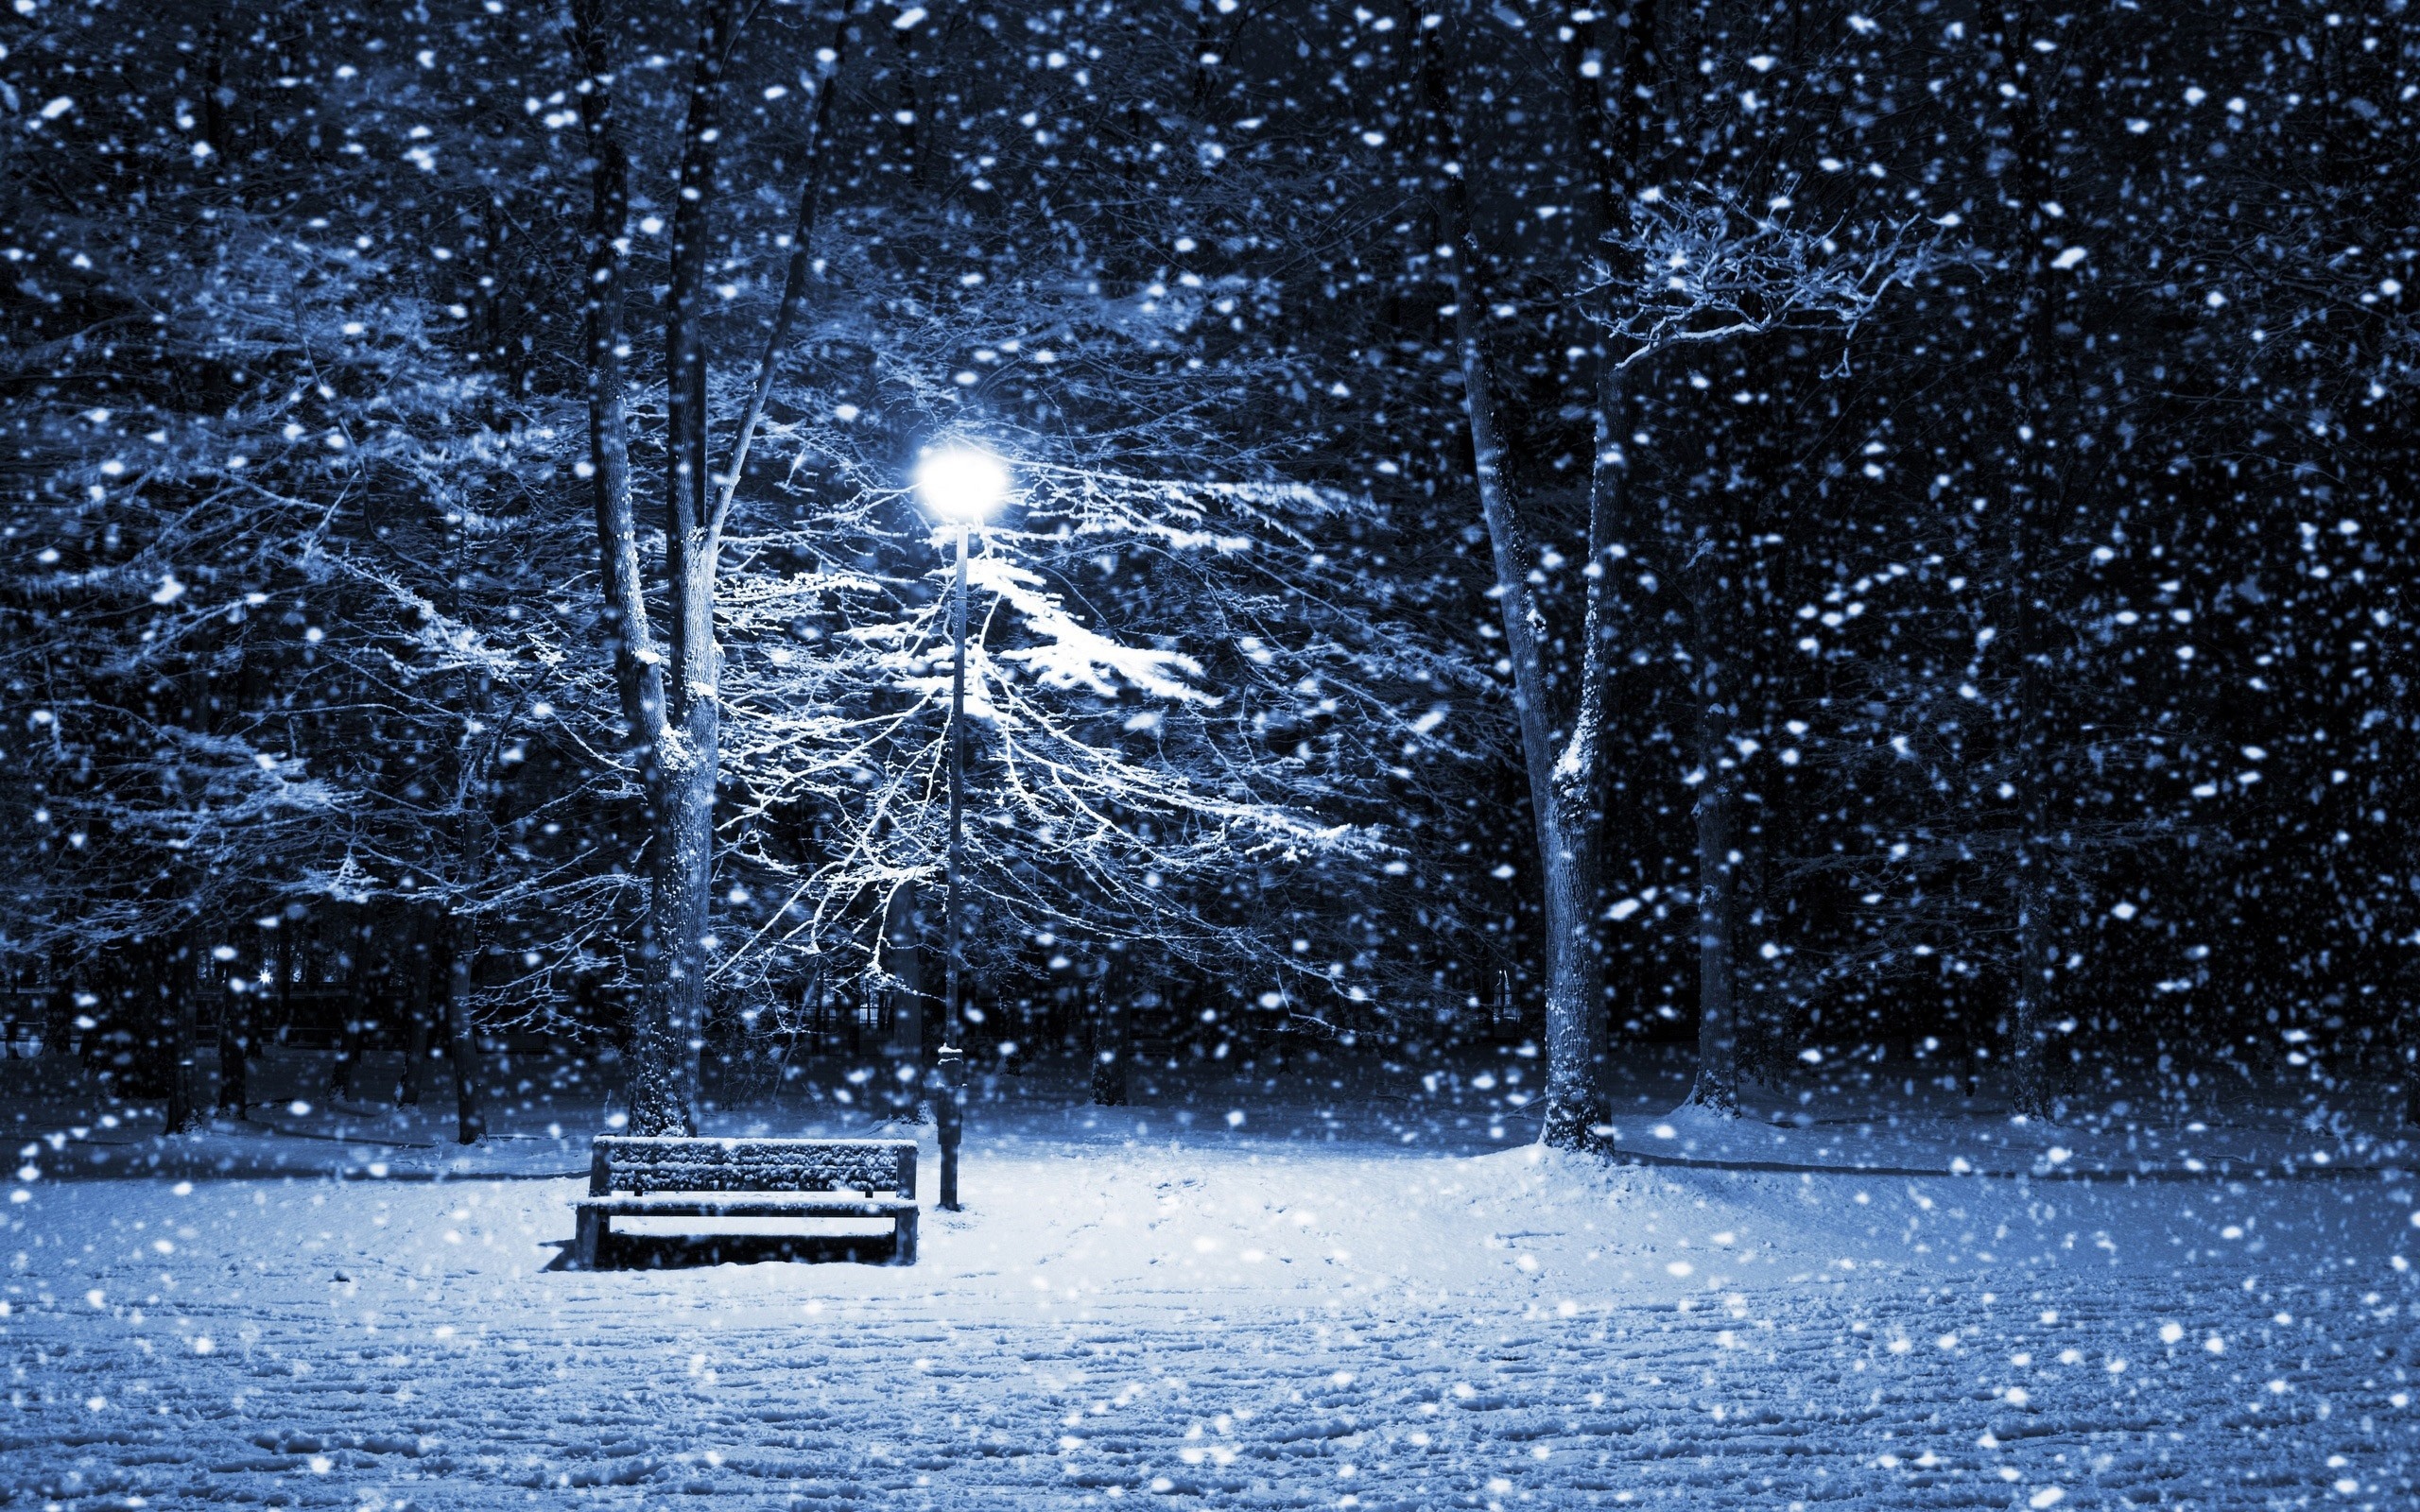 Frozen beauty, Bench in snow, Winter's grasp, Quiet solitude, 2560x1600 HD Desktop